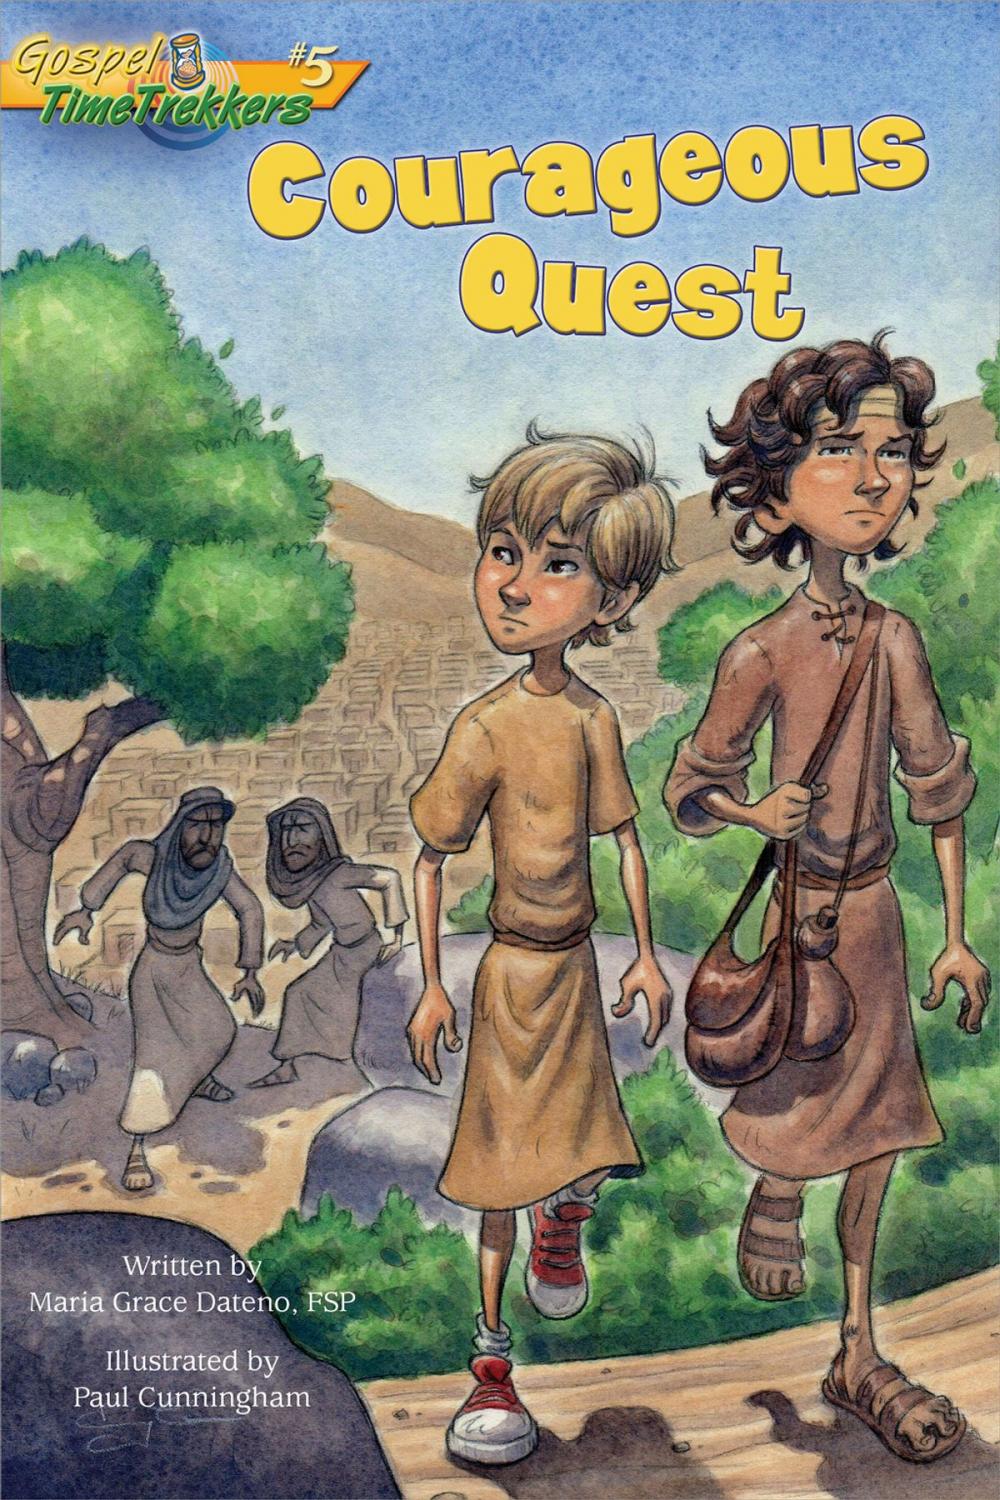 Big bigCover of Courageous Quest (Gospel Time Trekkers #5)